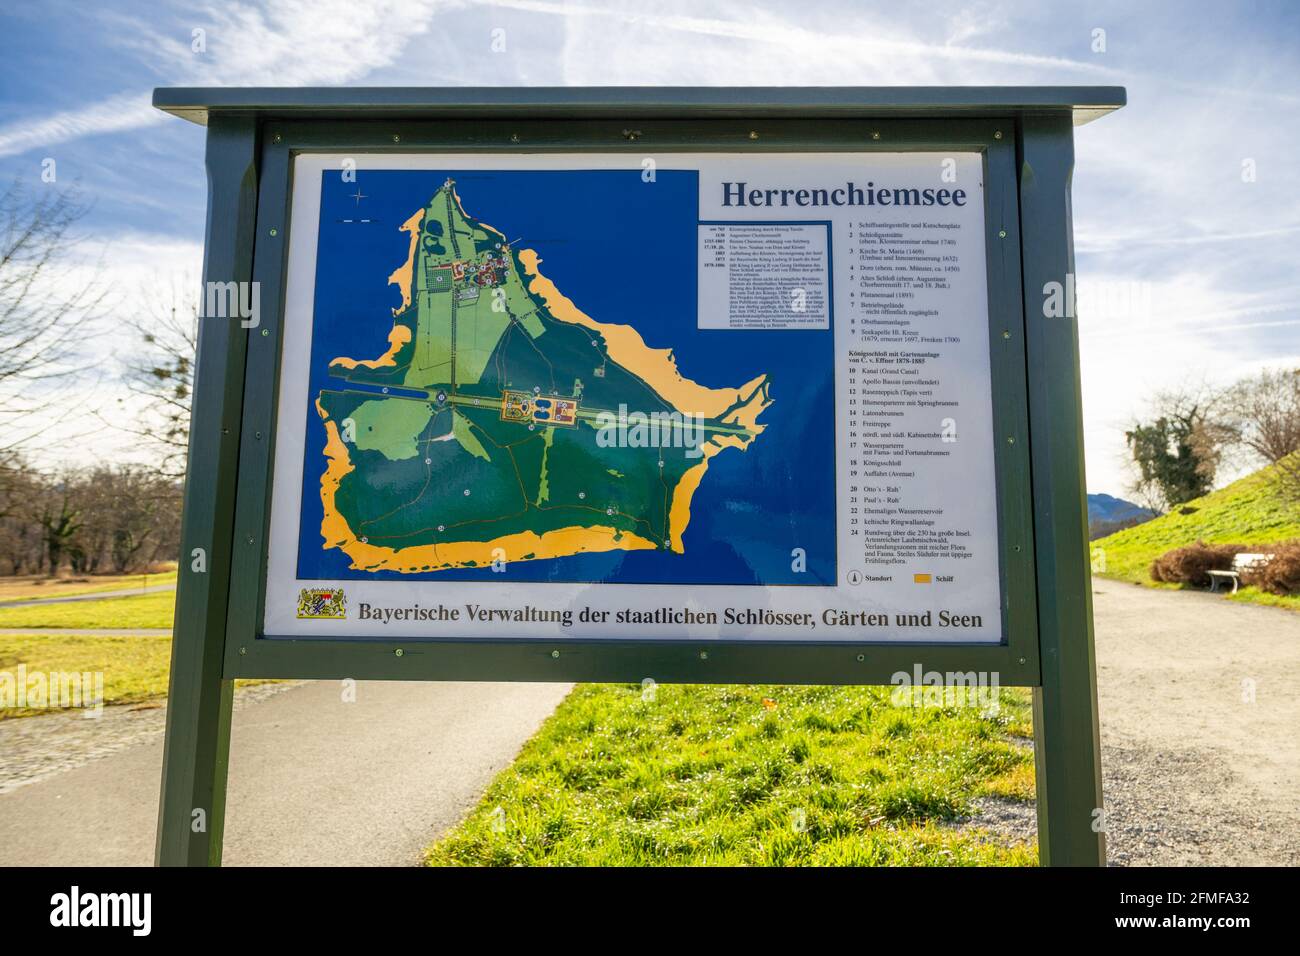 Frauenchimsee, Germania - 15 Dicembre 2021 - Mappa dell'isola di Frauenchimsee in bacheca, mostra la posizione del Palazzo Herrenchiemsee Foto Stock